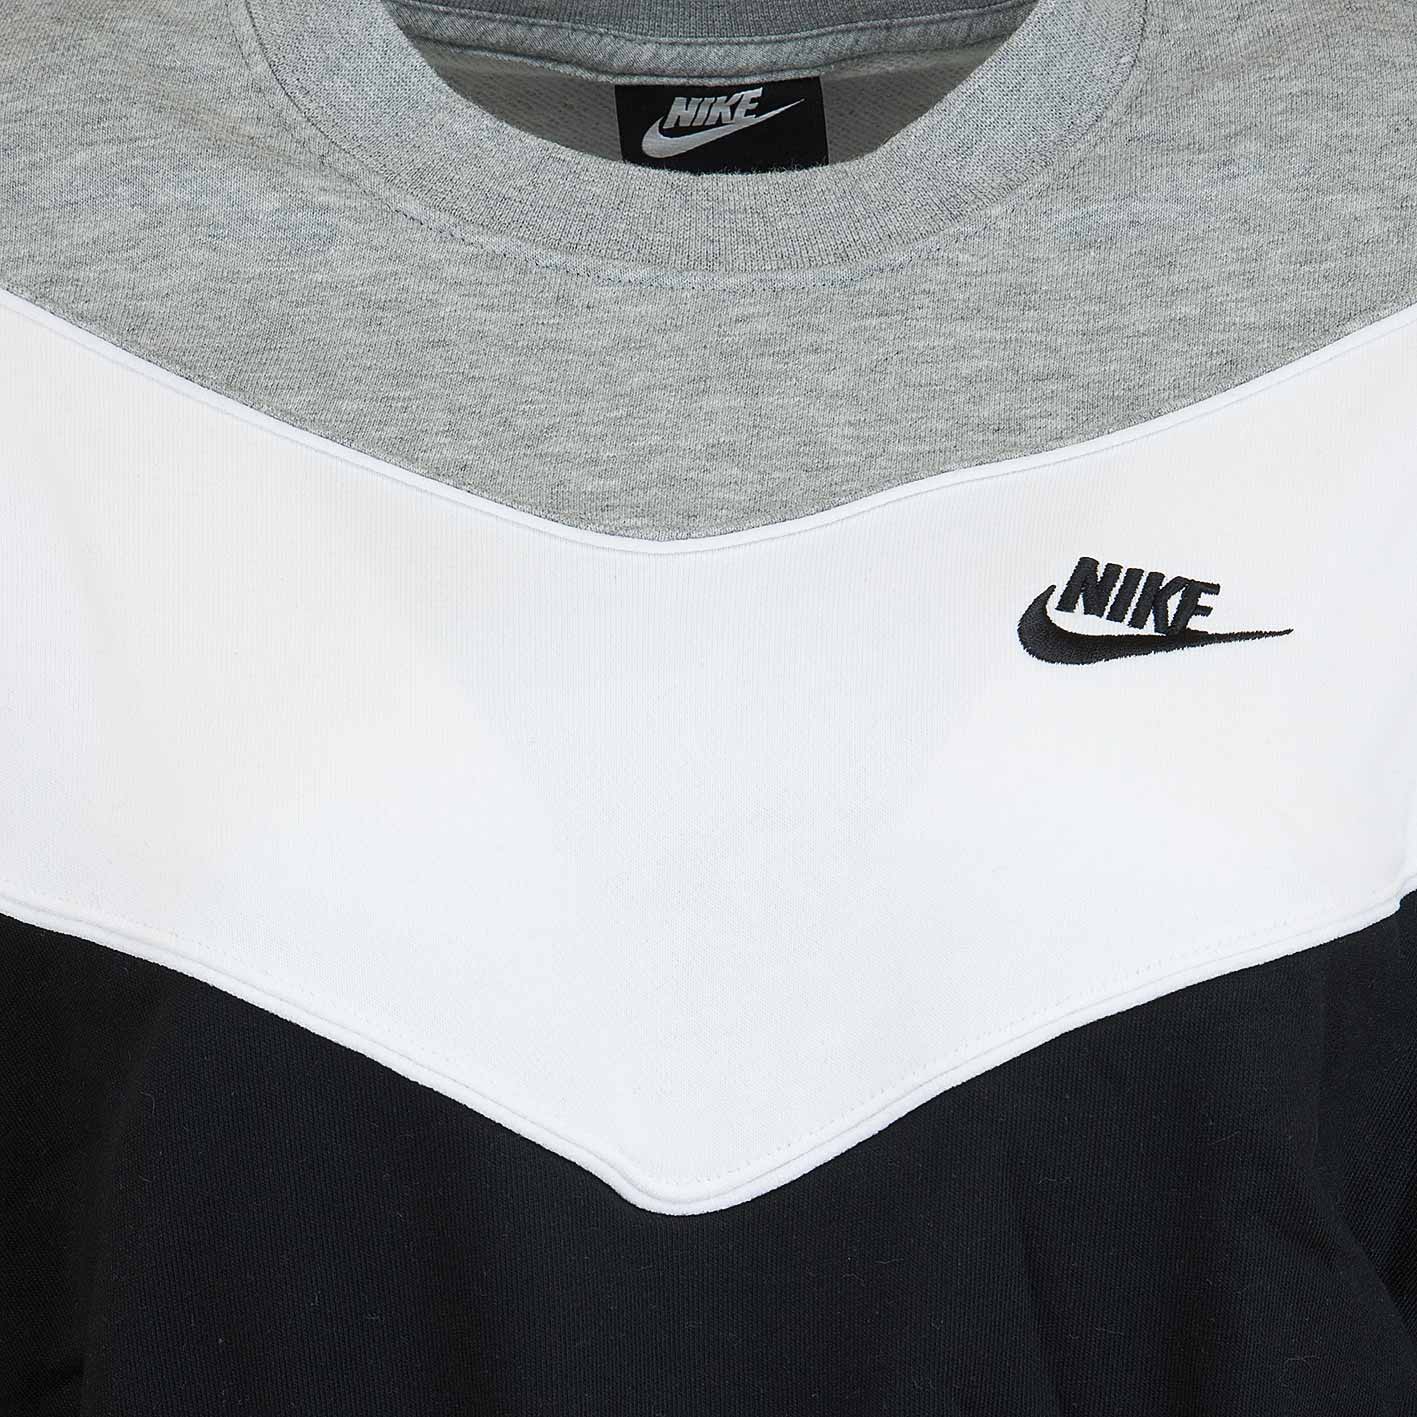 ☆ Nike Damen Sweatshirt Heritage schwarz/weiß/grau - hier bestellen!